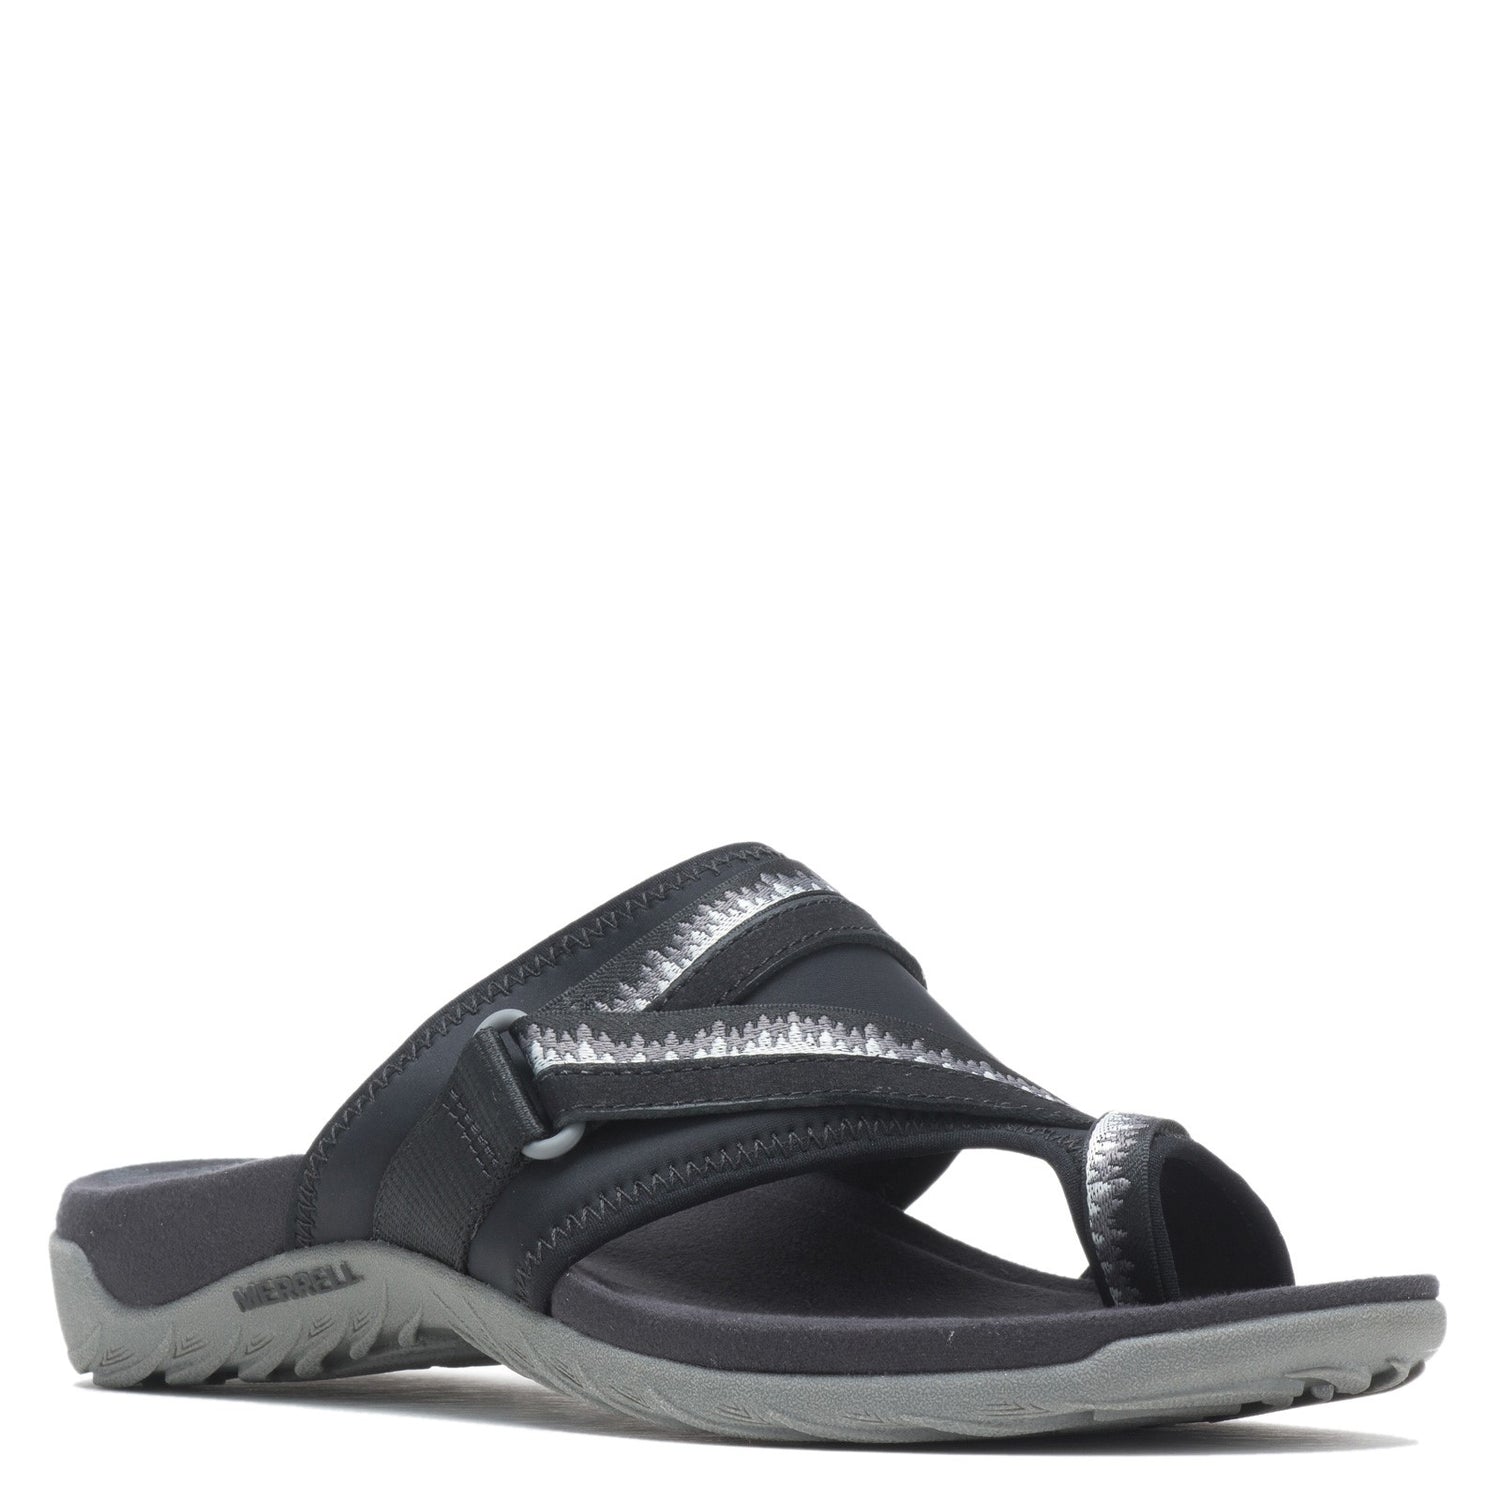 Peltz Shoes  Women's Merrell Terran Cush 3 Post Sandal - Wide Width BLACK J002728W